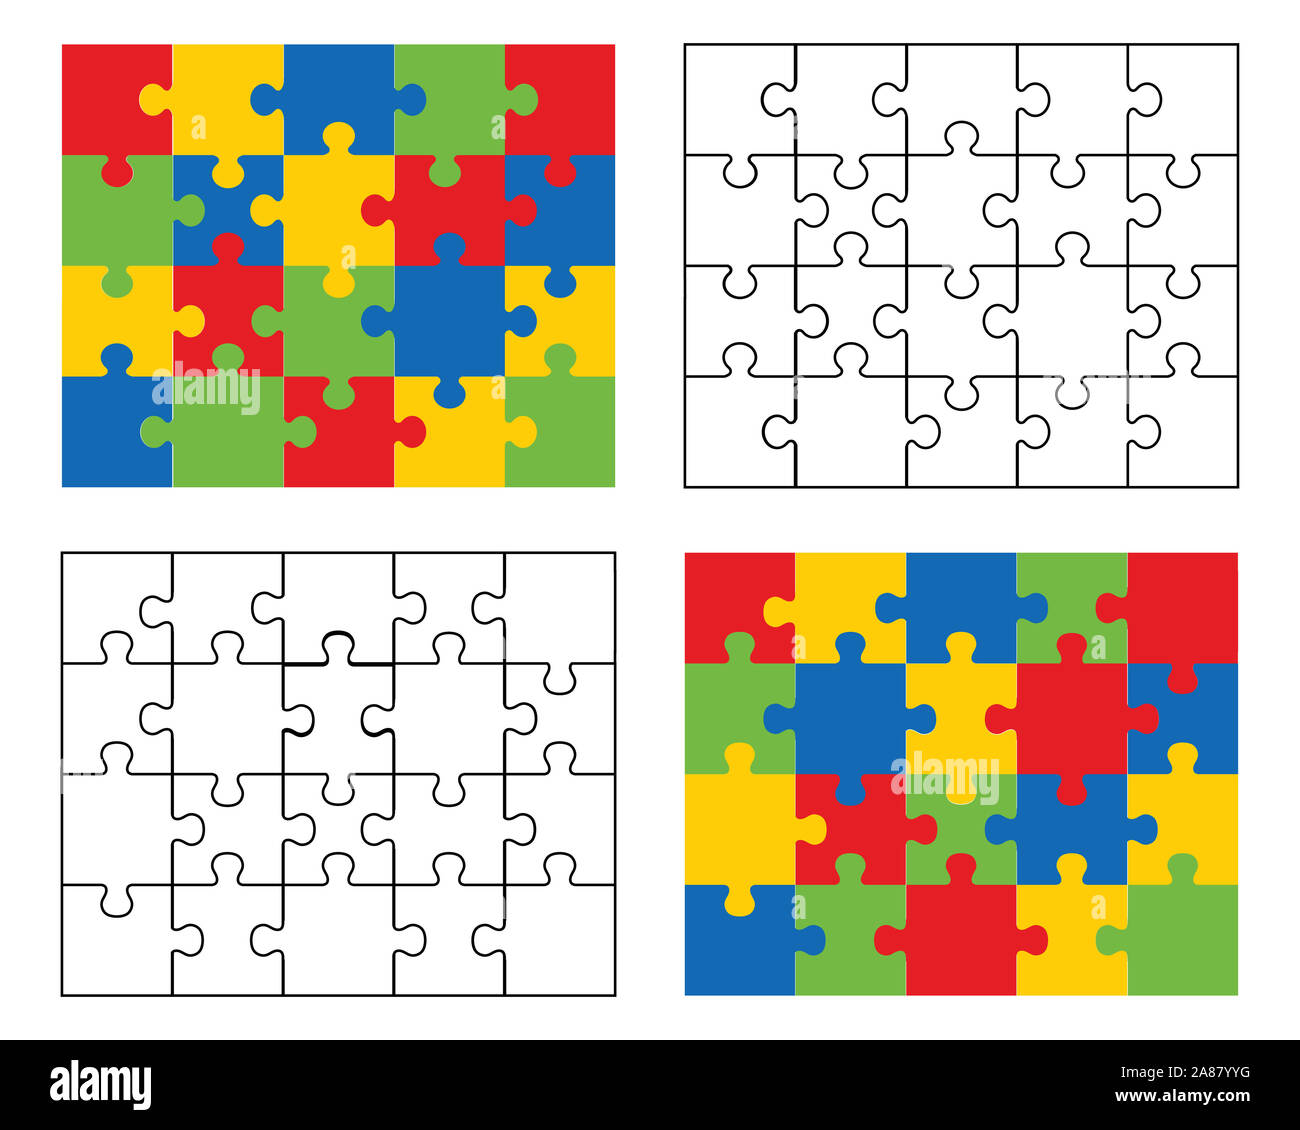 Illustrazione di puzzle bianchi, neri e colorati, pezzi separati Illustrazione di puzzle bianchi, neri e colorati, pezzi separati Foto Stock